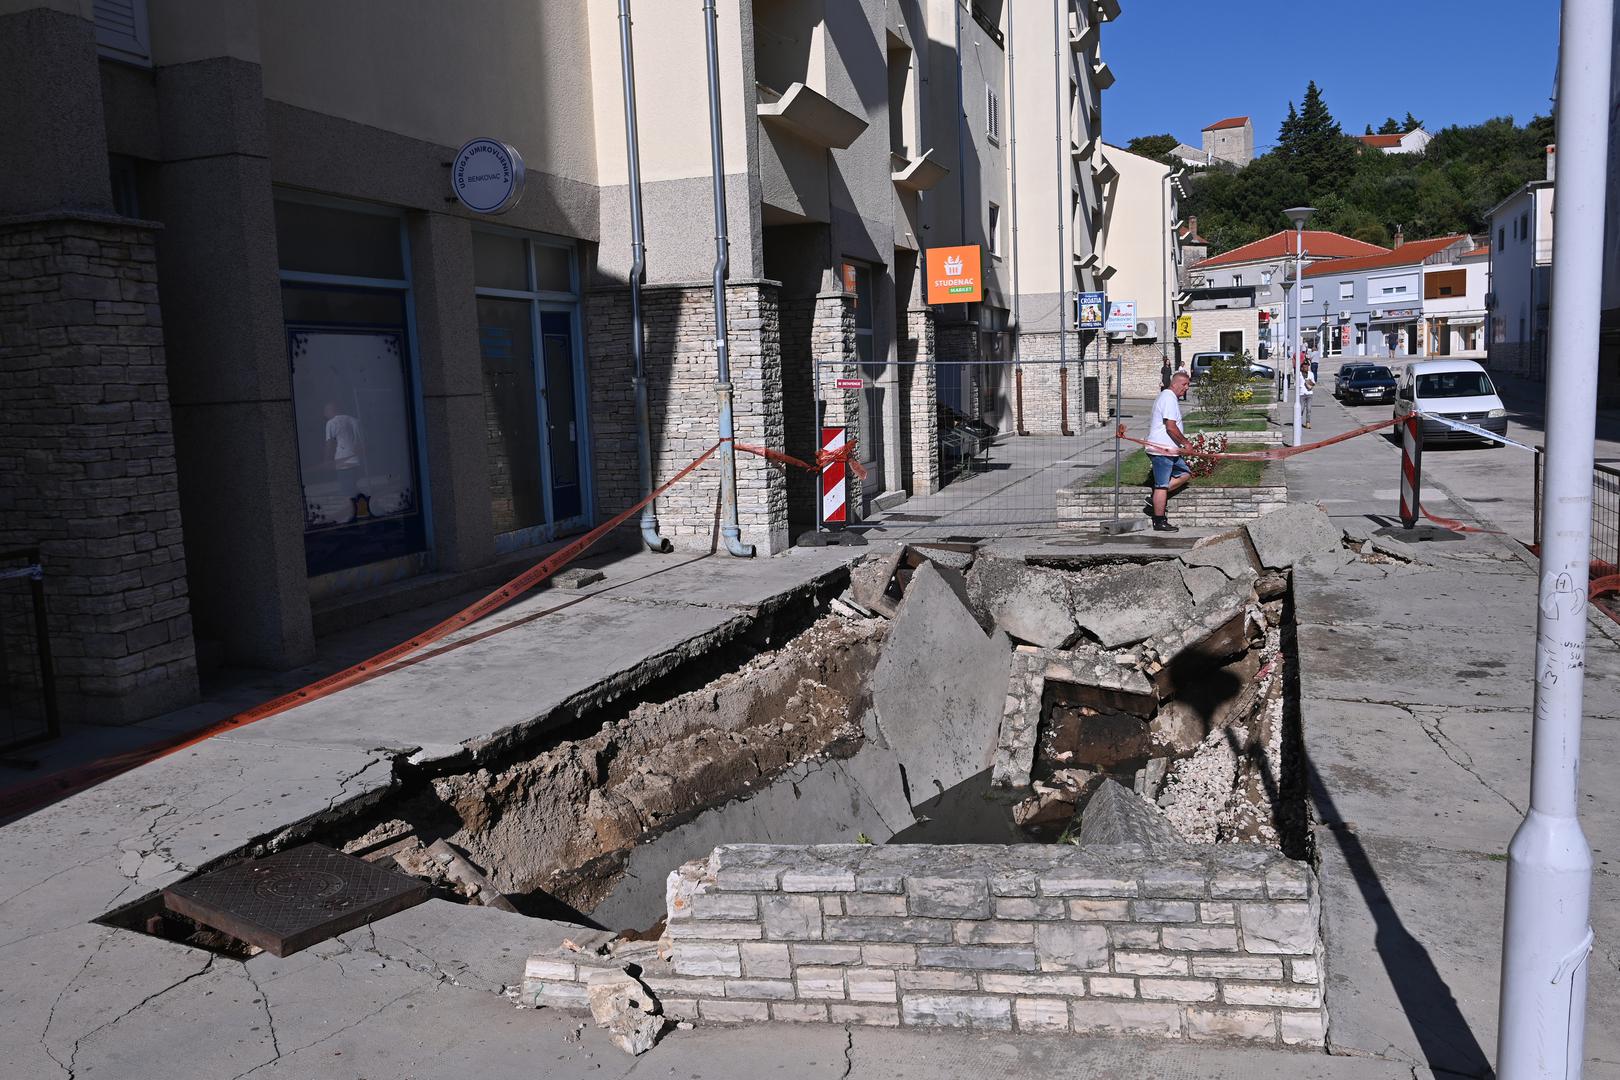 Ukoliko se rupa uskoro ne sanira na način koji nije betoniranje, stanarima zgrade prijeti iseljavanje, piše Zadarski.hr.